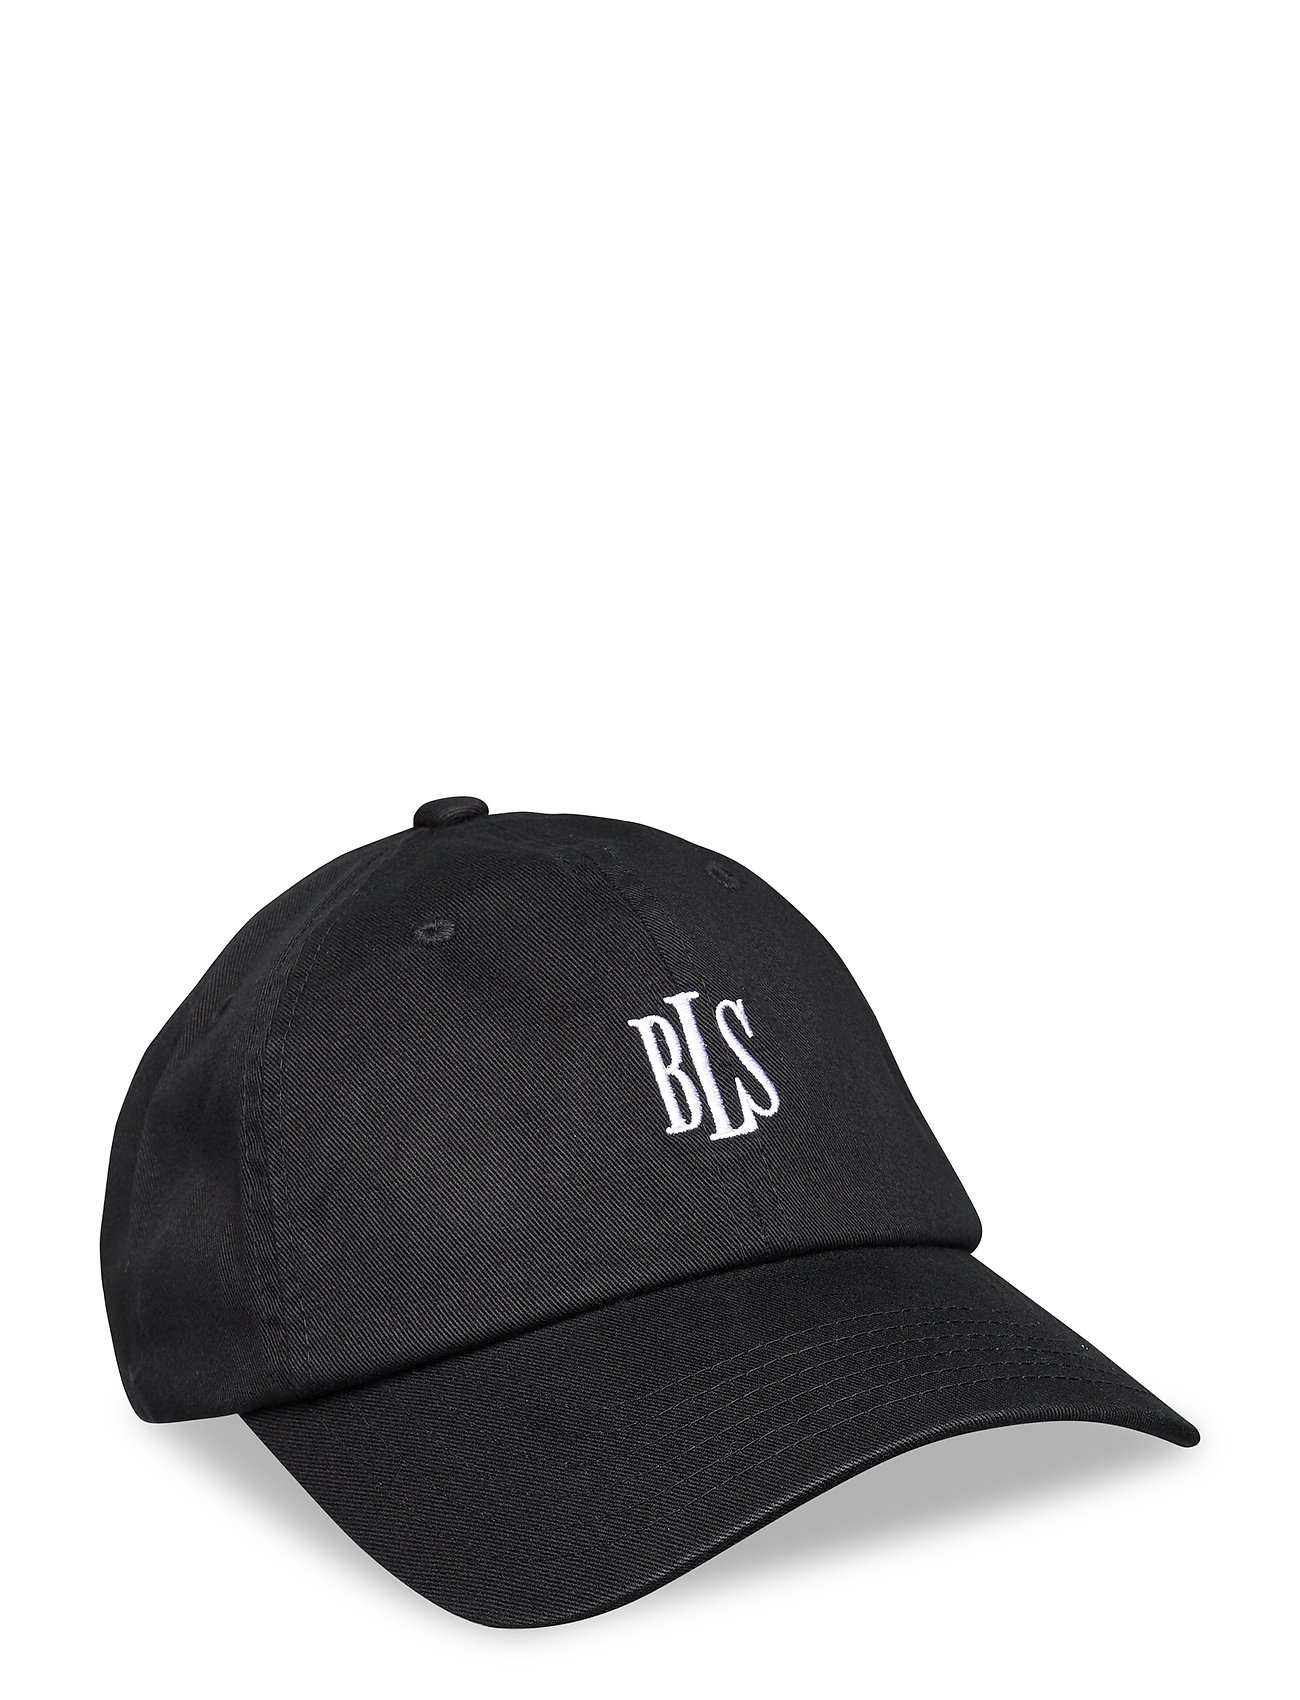 BLS Bls Papi Cap - - Boozt.com